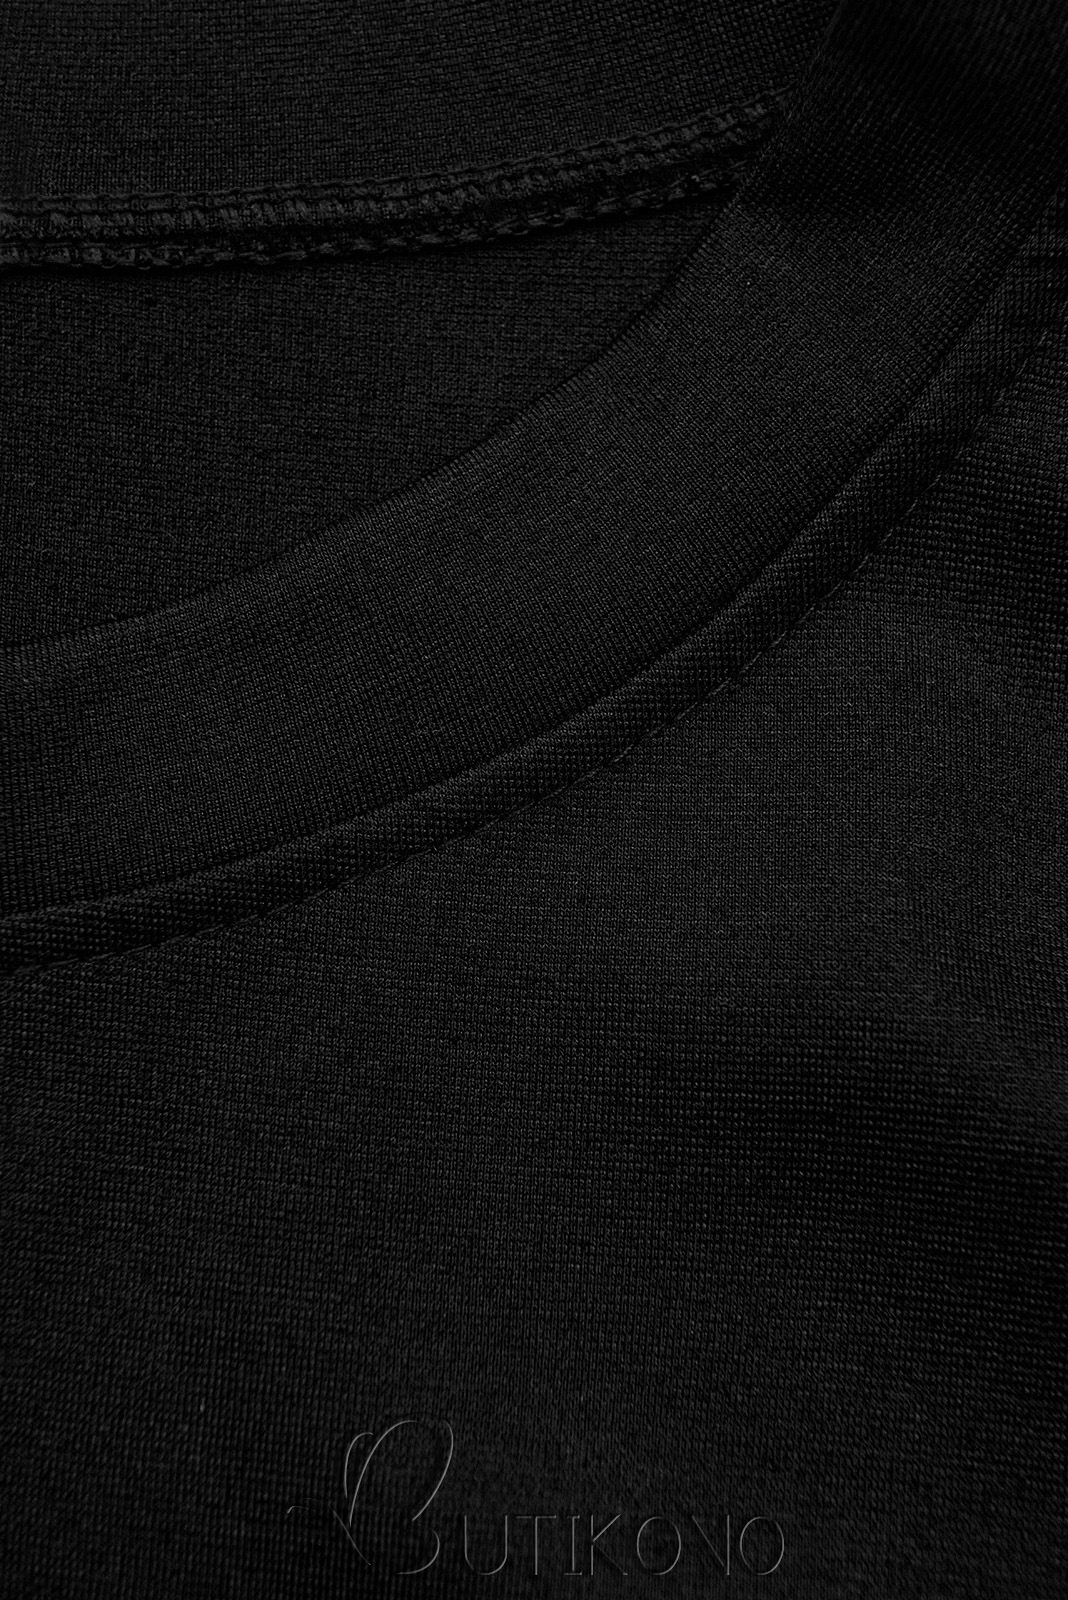 Čierne mikinové šaty s čipkou